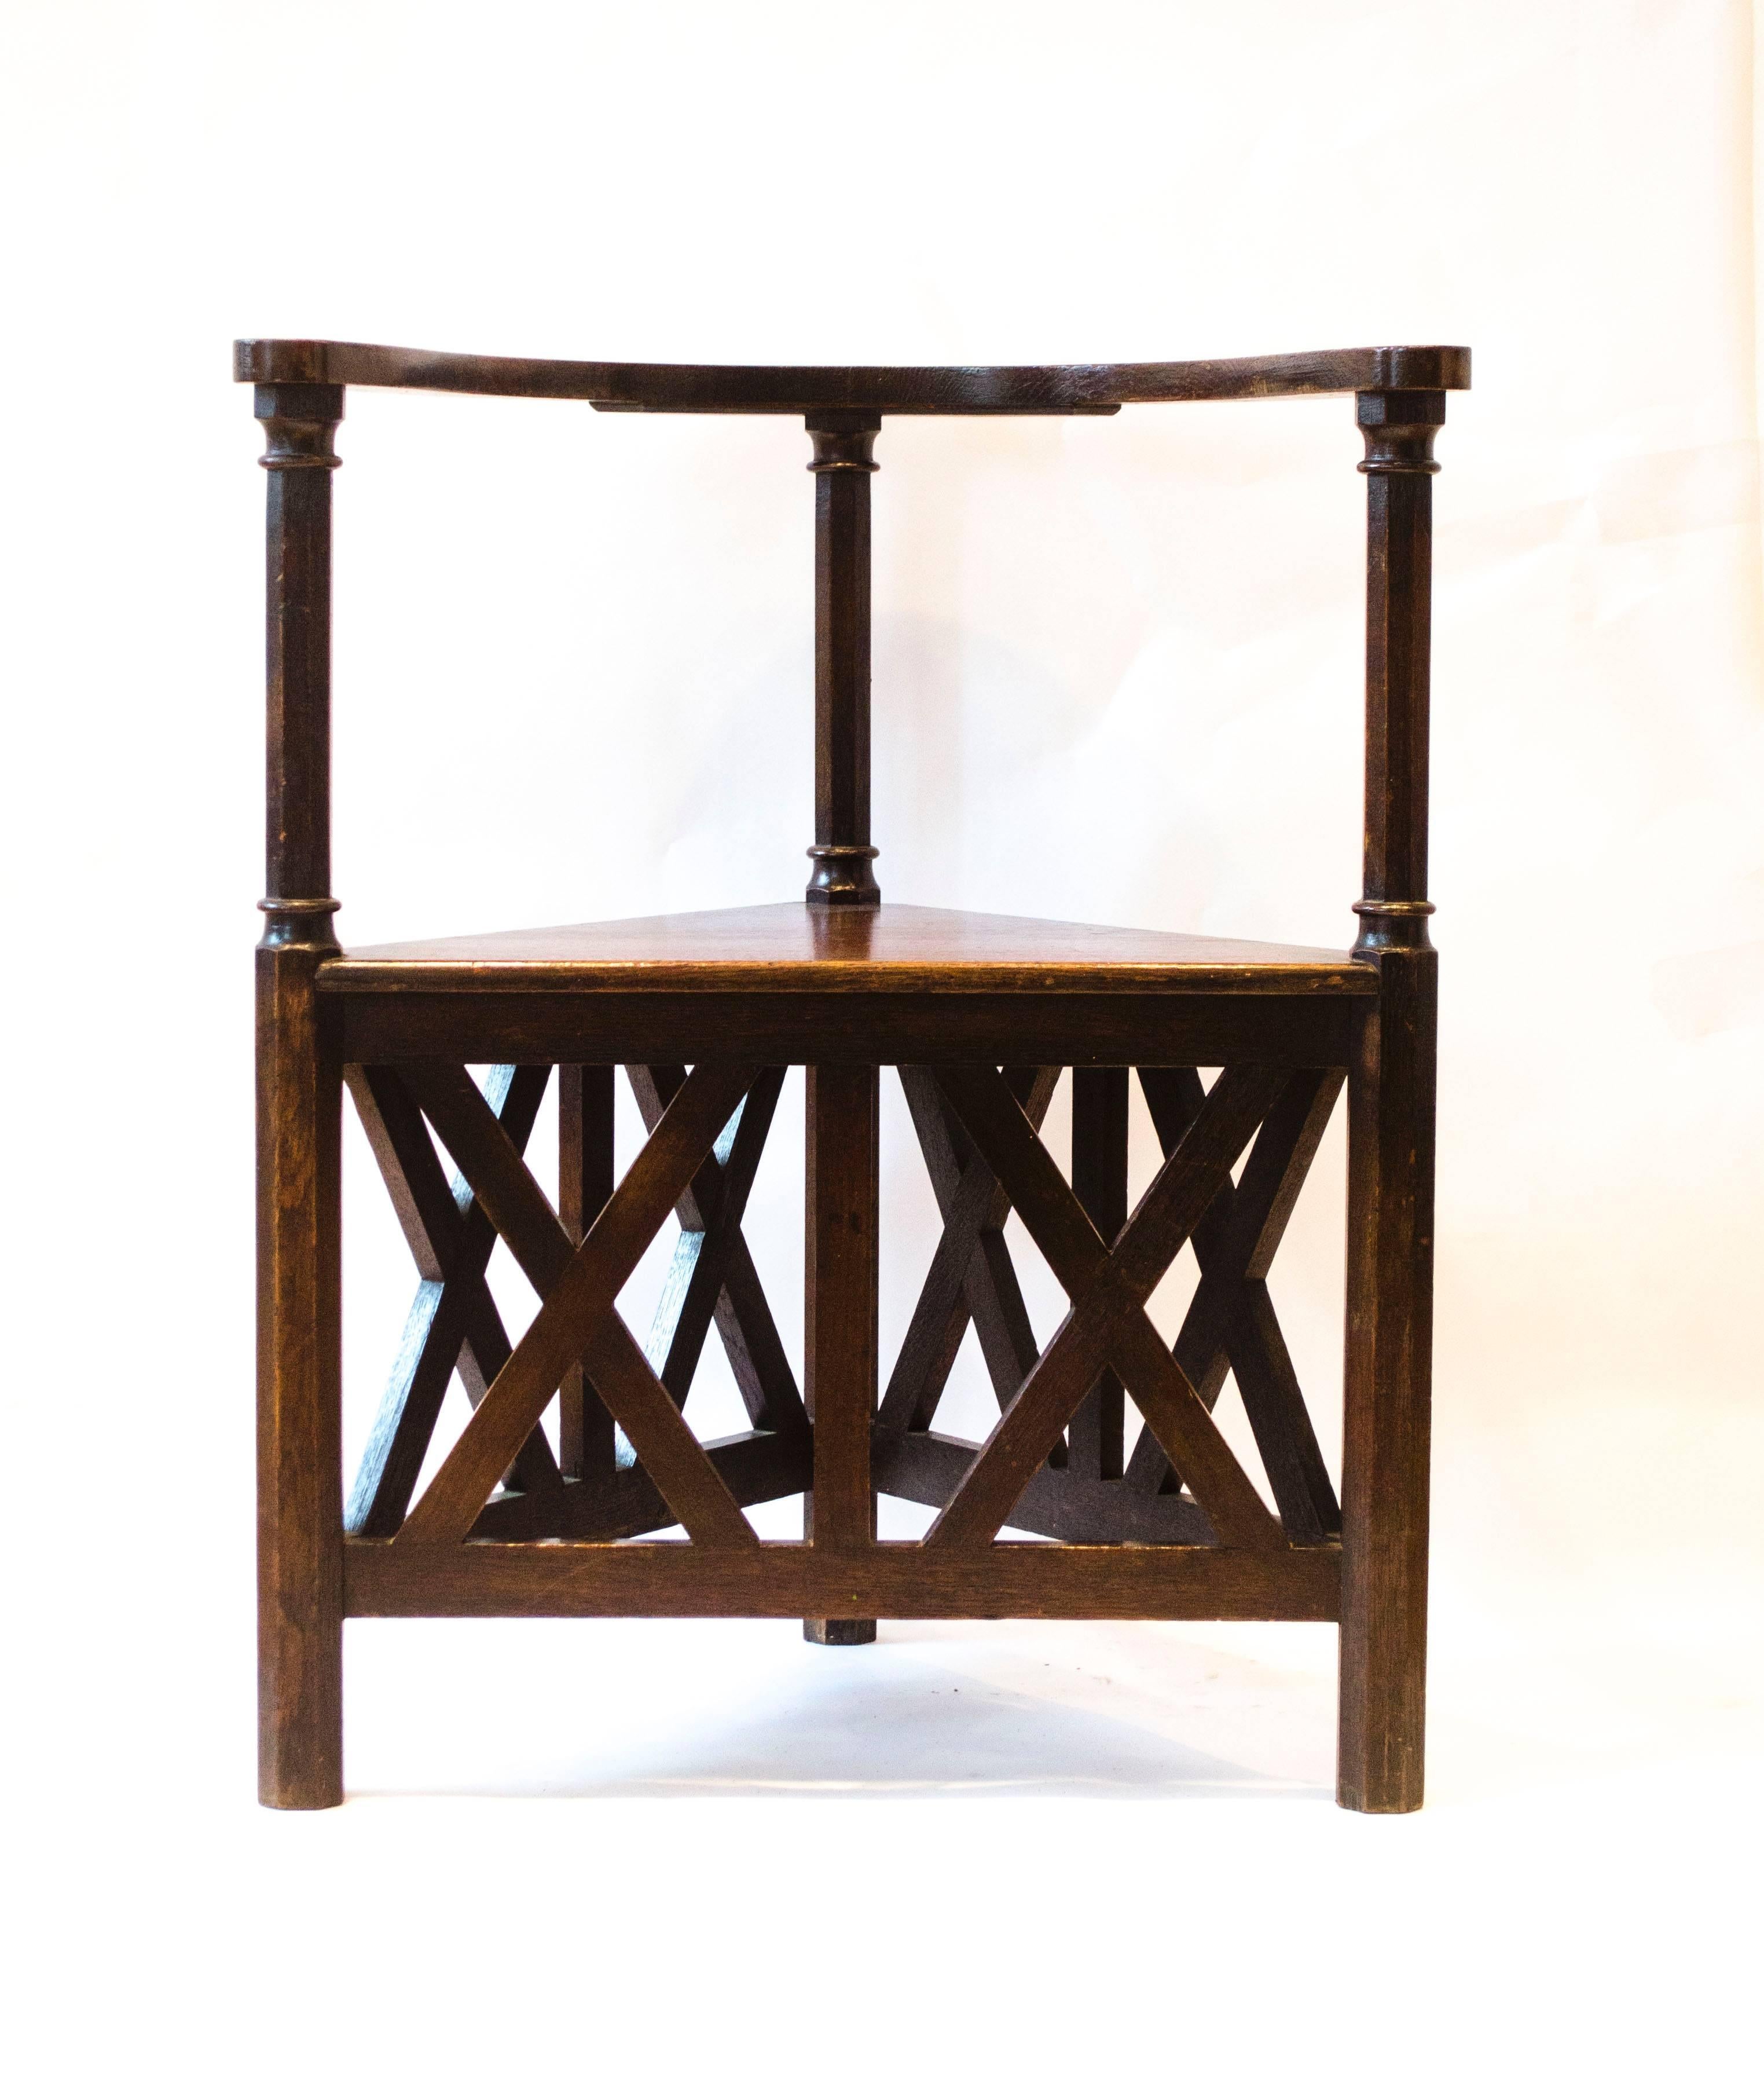 Josef Hoffmann (1870-1956) entwarf für die 5. Ausstellung der Wiener Sezession im Jahr 1899.
Ein außergewöhnlicher Eichen-Ecksessel. 
Das letzte Bild zeigt einen identischen, von Hoffmann entworfenen Sessel, der vom 30. Mai bis zum 31. August 2008